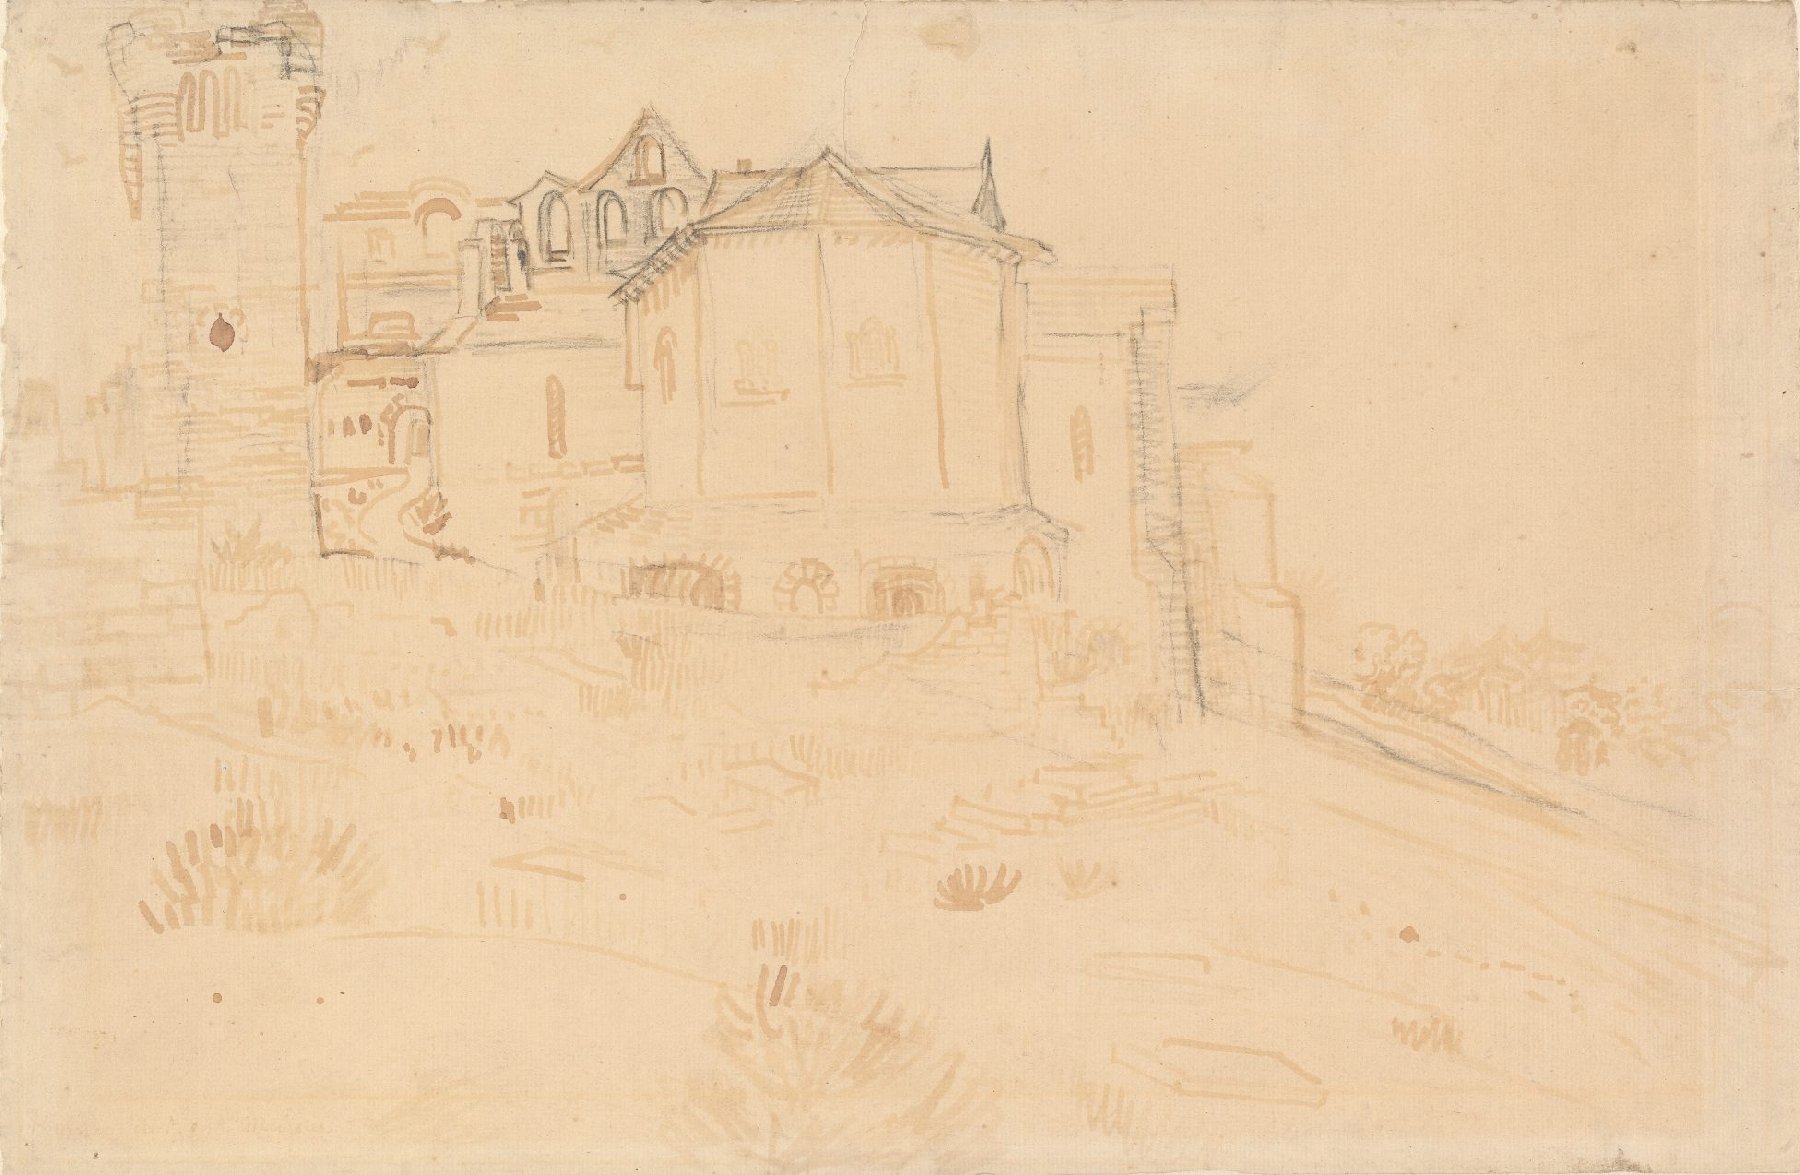 Ruïne van Montmajour Vincent van Gogh (1853 - 1890), Arles, mei 1888